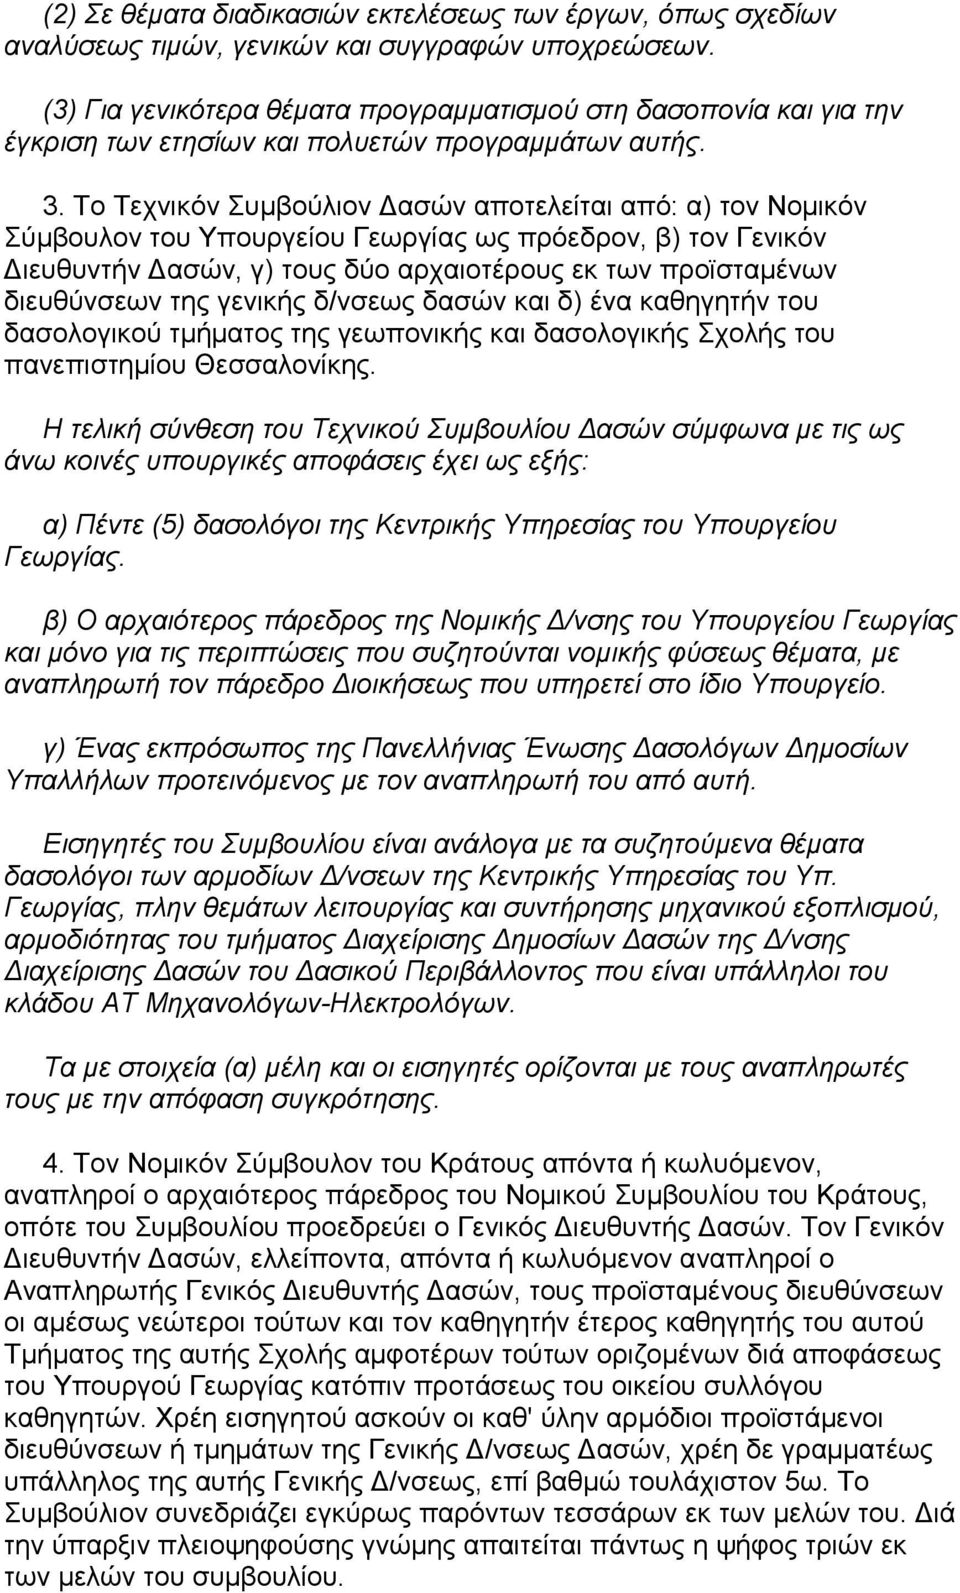 Το Τεχνικόν Συµβούλιον ασών αποτελείται από: α) τον Νοµικόν Σύµβουλον του Υπουργείου Γεωργίας ως πρόεδρον, β) τον Γενικόν ιευθυντήν ασών, γ) τους δύο αρχαιοτέρους εκ των προϊσταµένων διευθύνσεων της